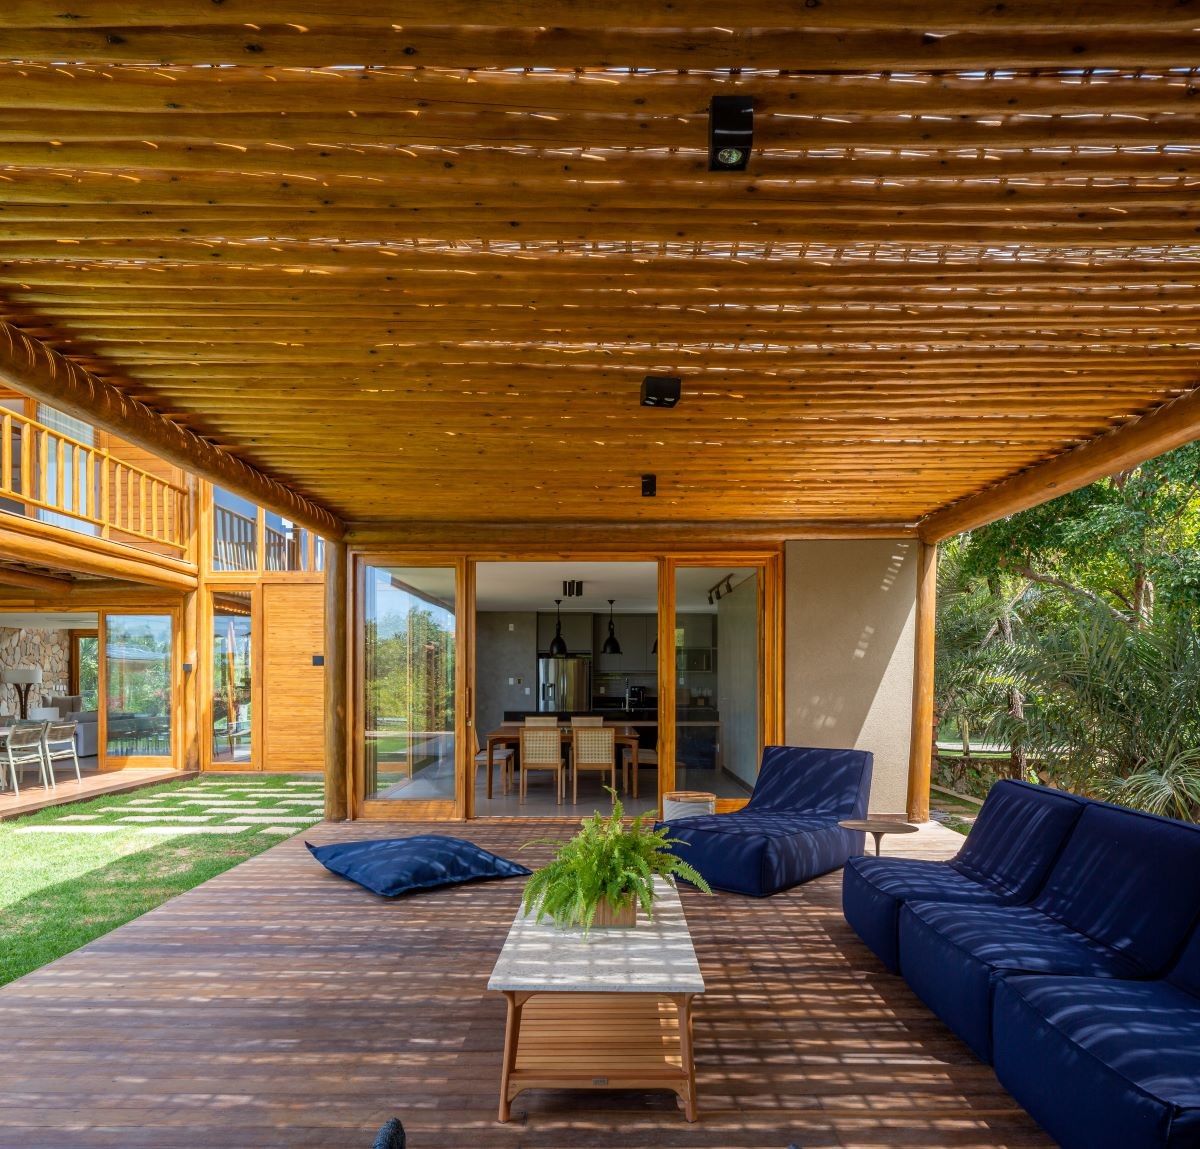 ÁREA EXTERNA | Os móveis da Tidelli compõem o jardim com as cores que fazem alusão à natureza (Foto: Manuel Sá / Divulgação)